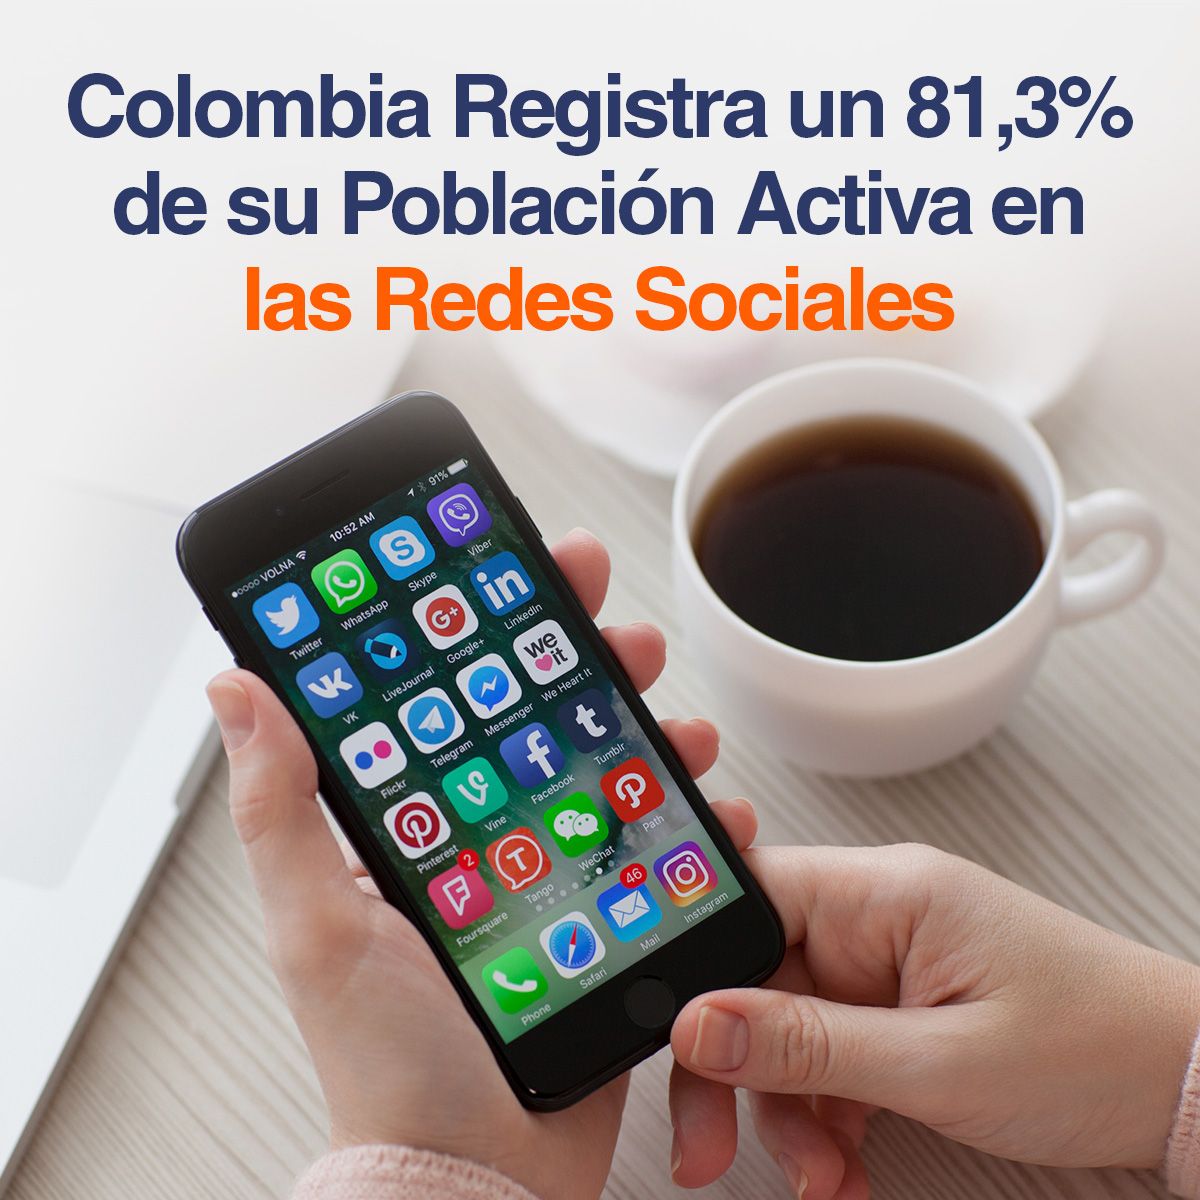 Colombia Registra un 81,3% de su Población Activa en las Redes Sociales